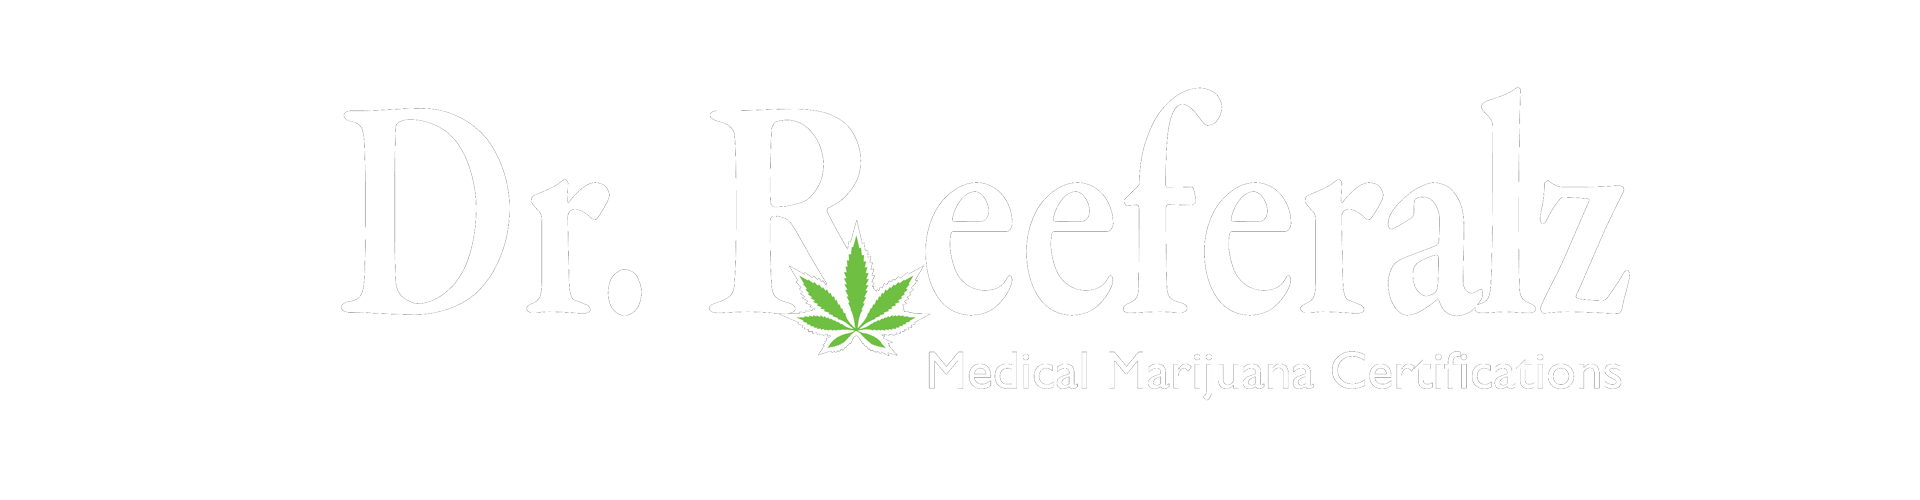 dr reeferalz logo